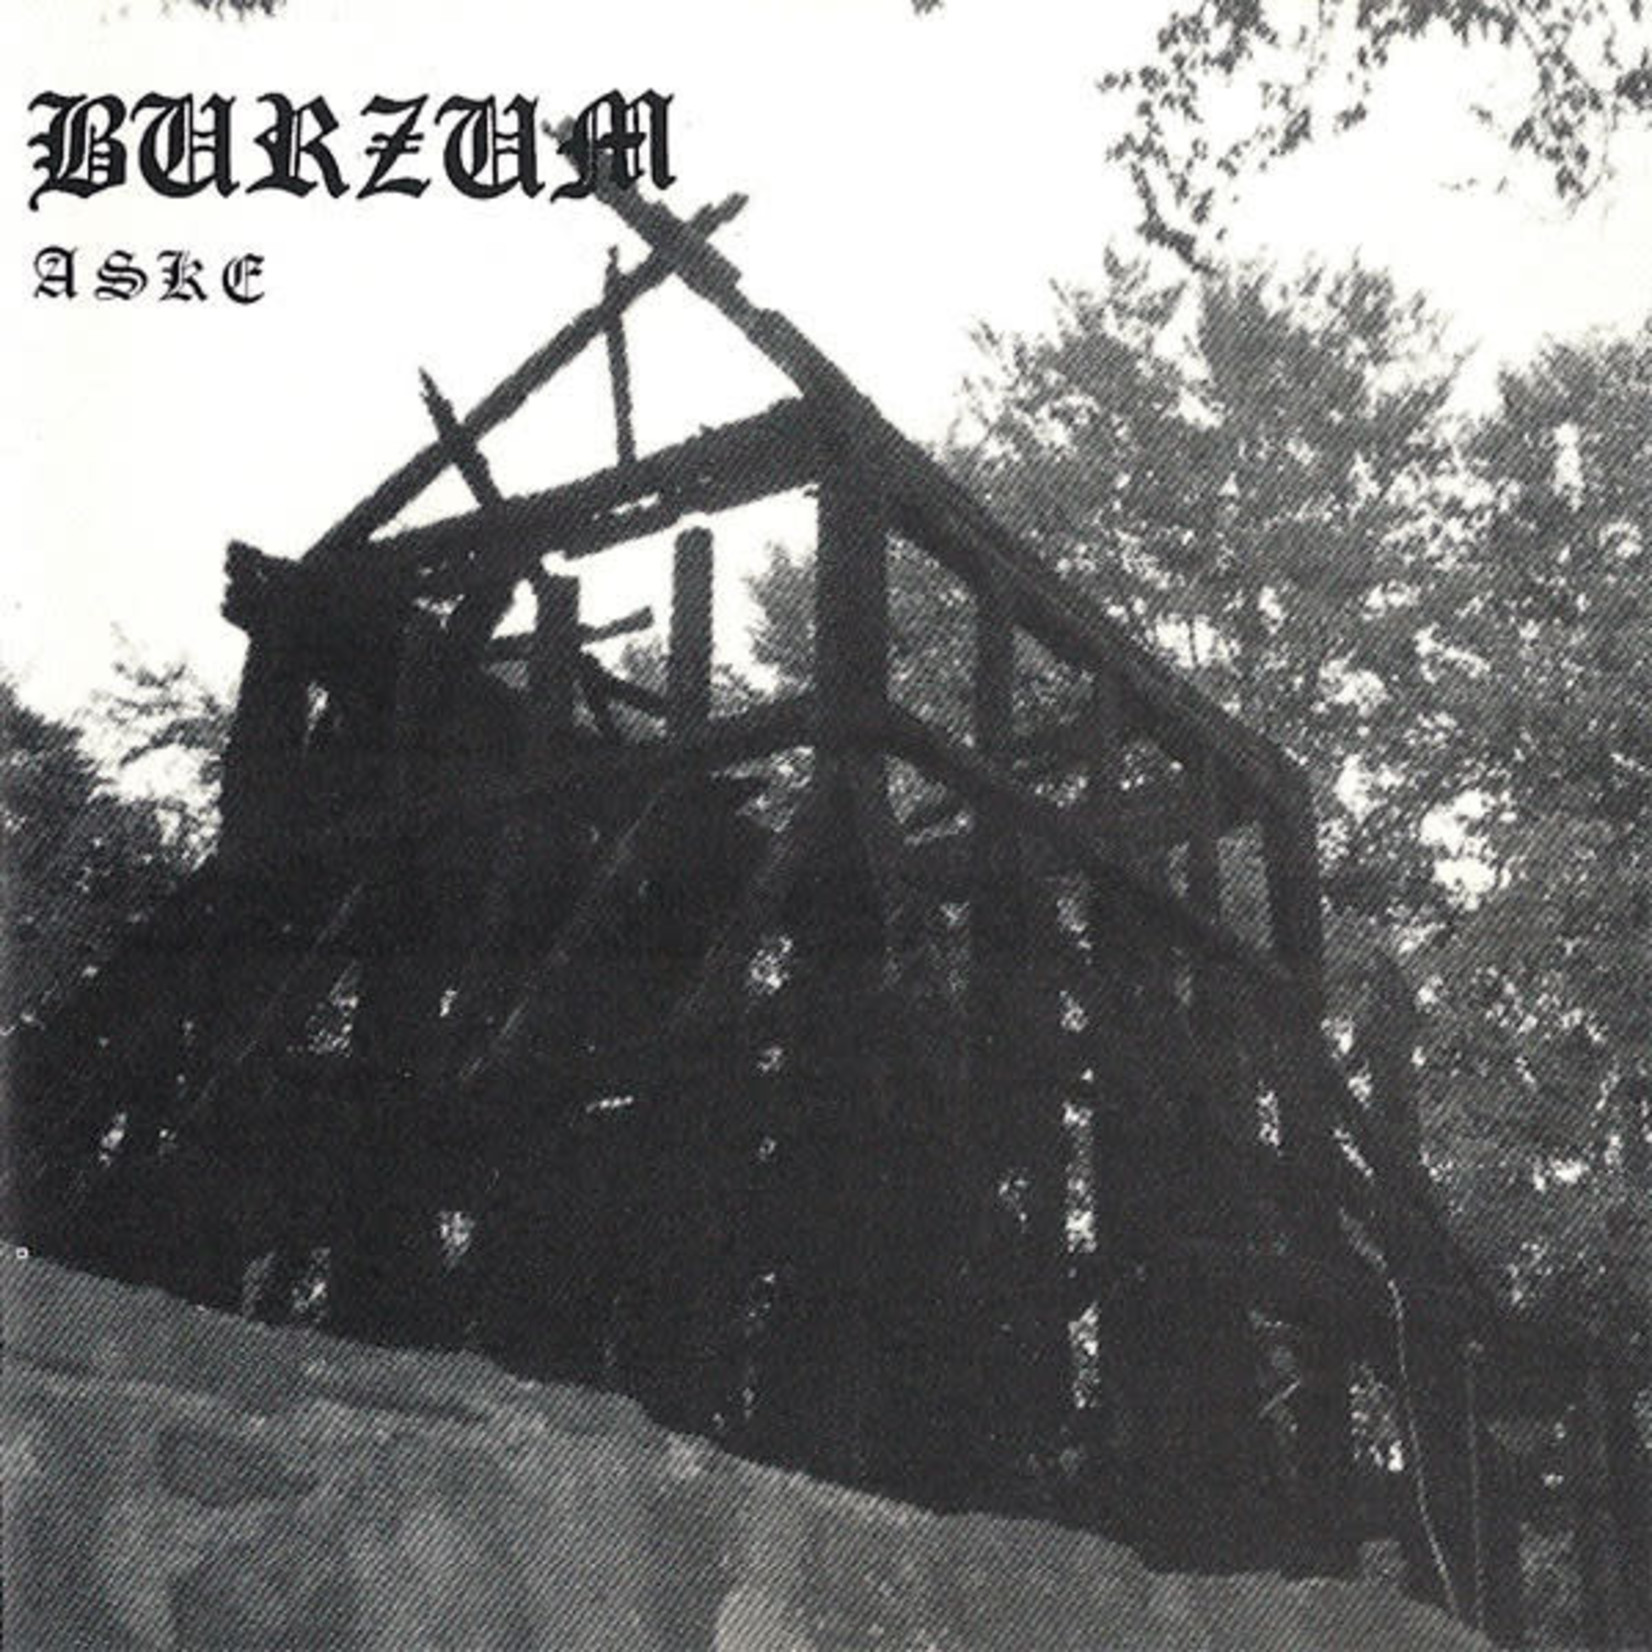 [New] Burzum - Aske EP (black)